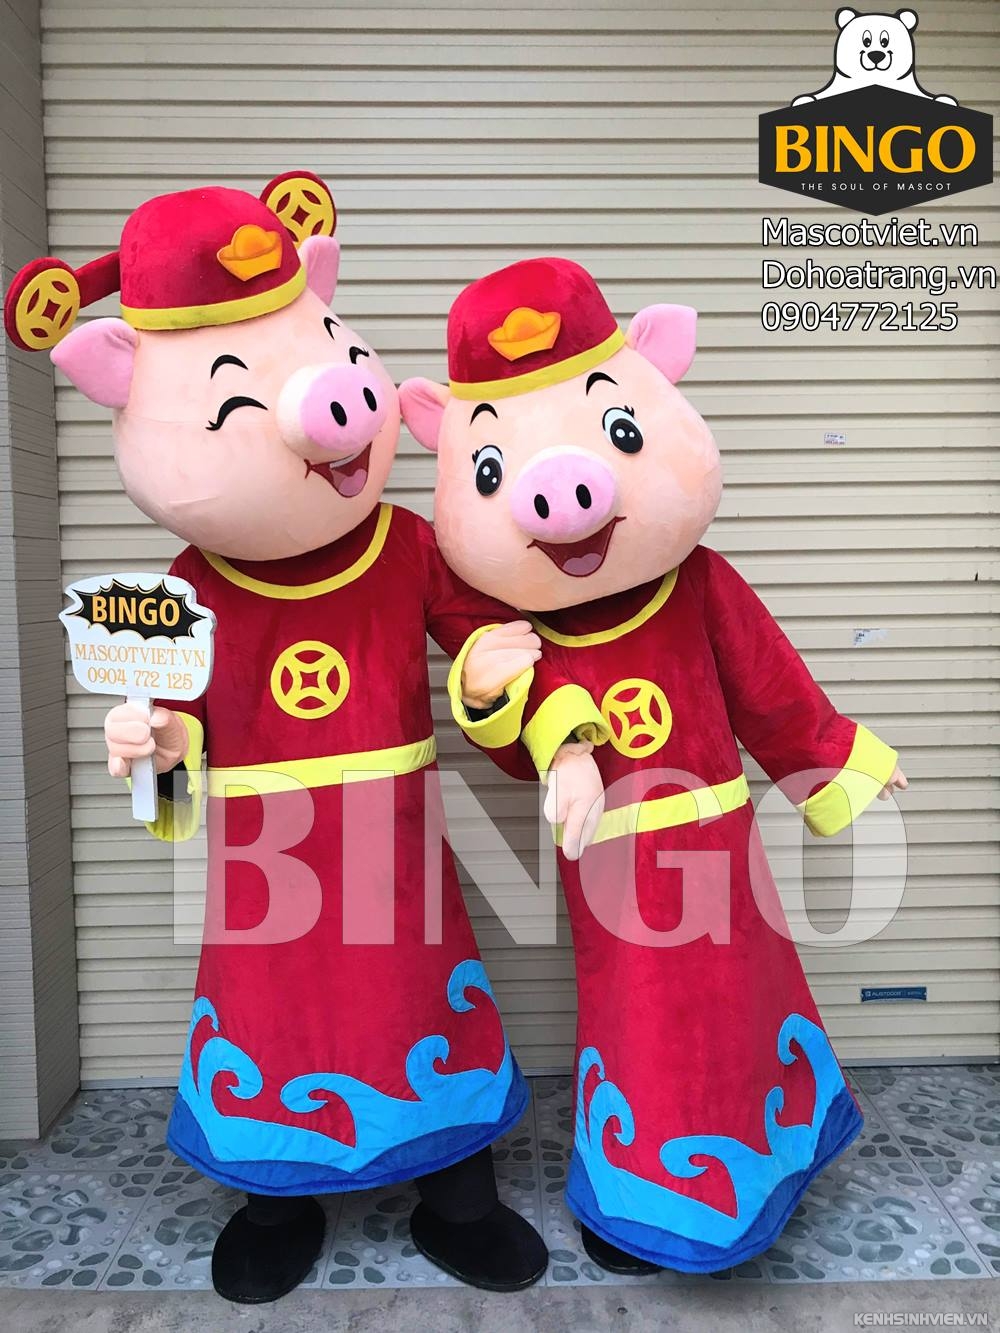 mascot-heo-than-tai-bingo-costumes-0904772125.jpg